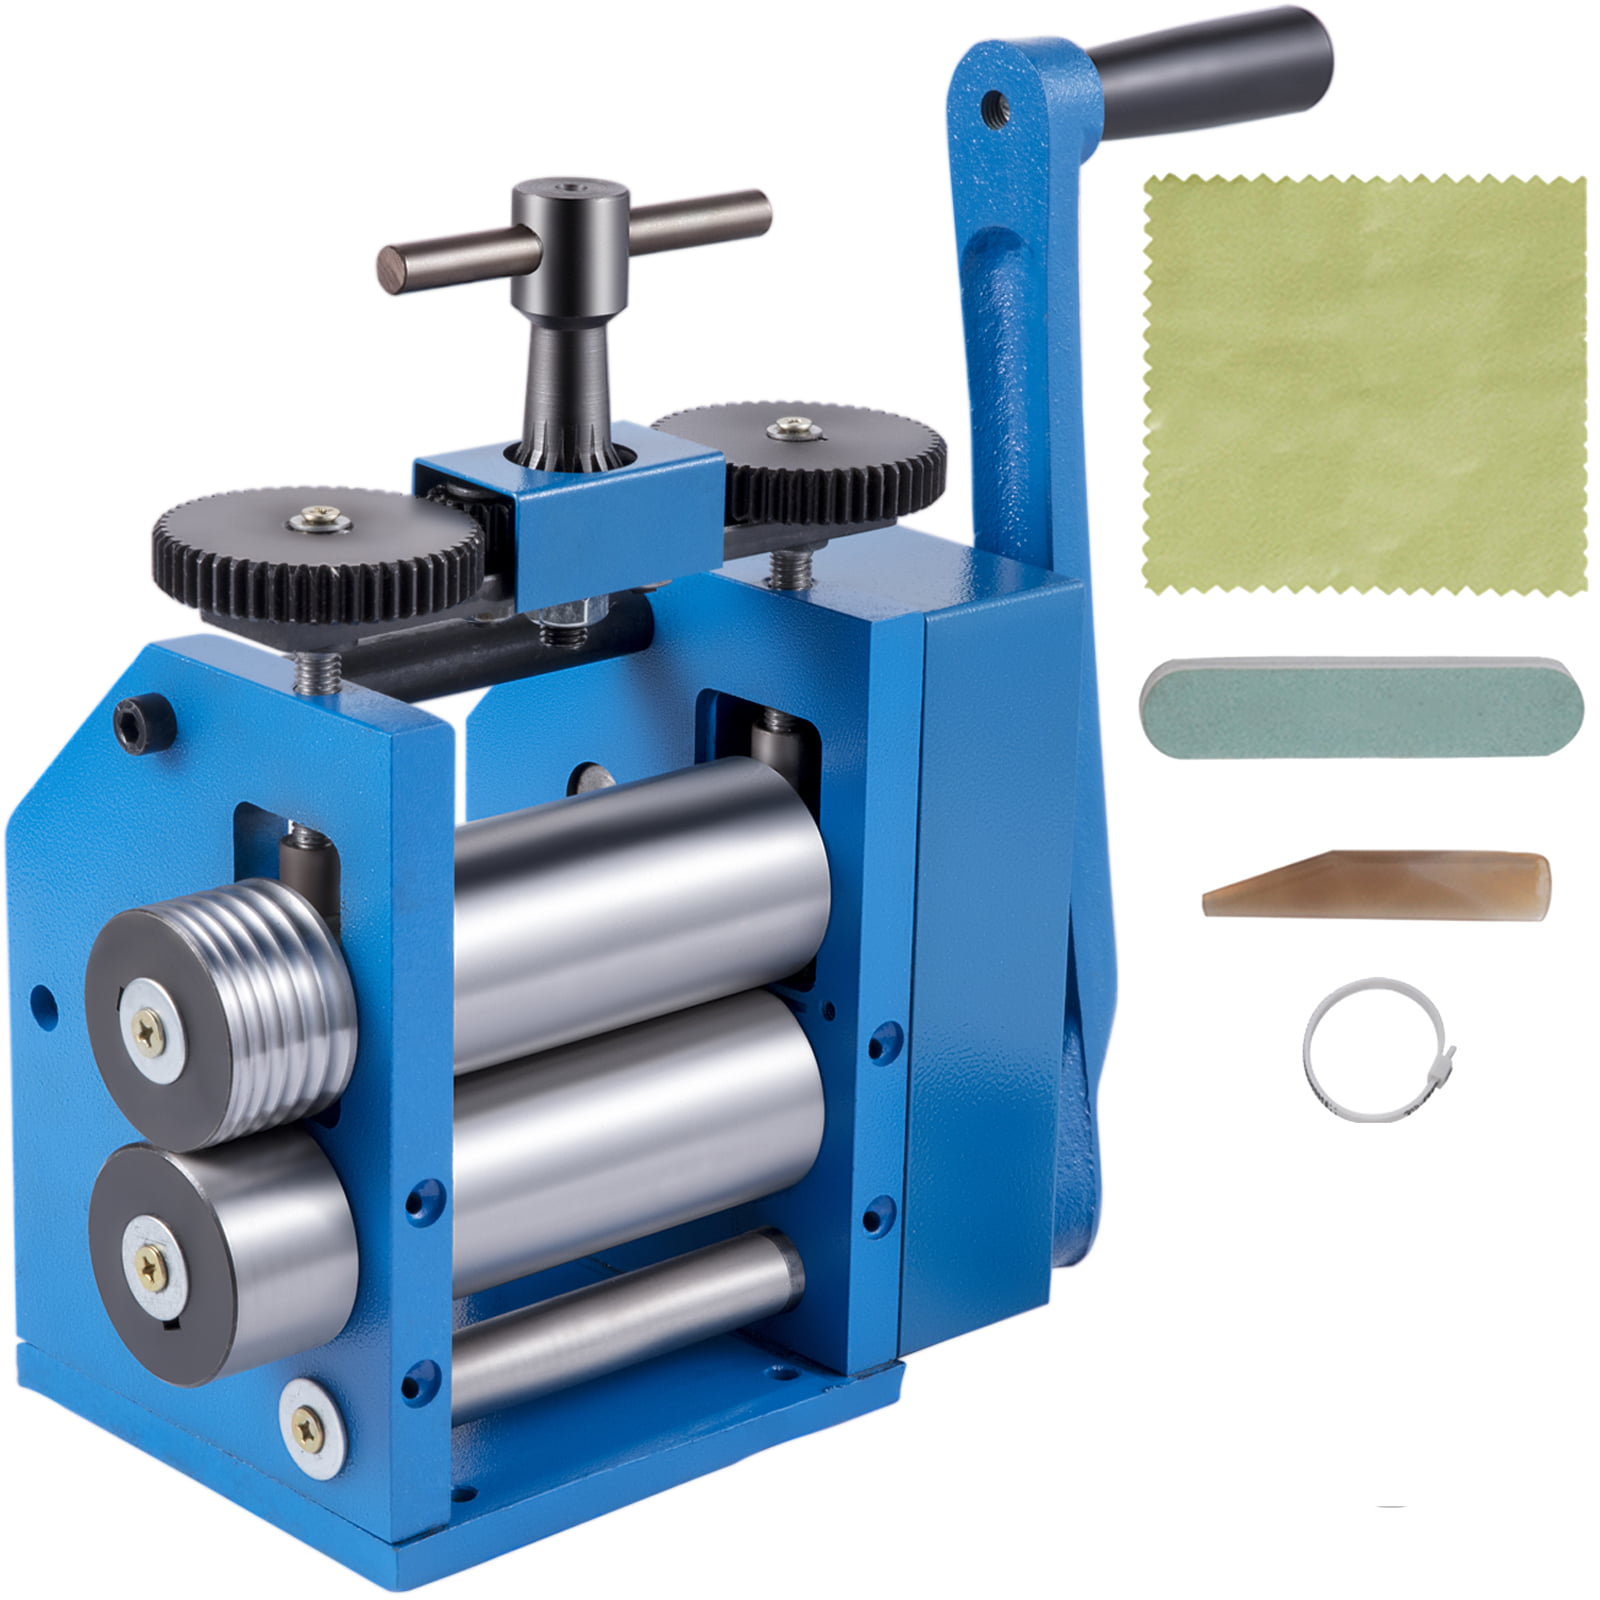 Jewelry Rolling Mill Machine Hand Press Tabletting Processing Flattening Tool 